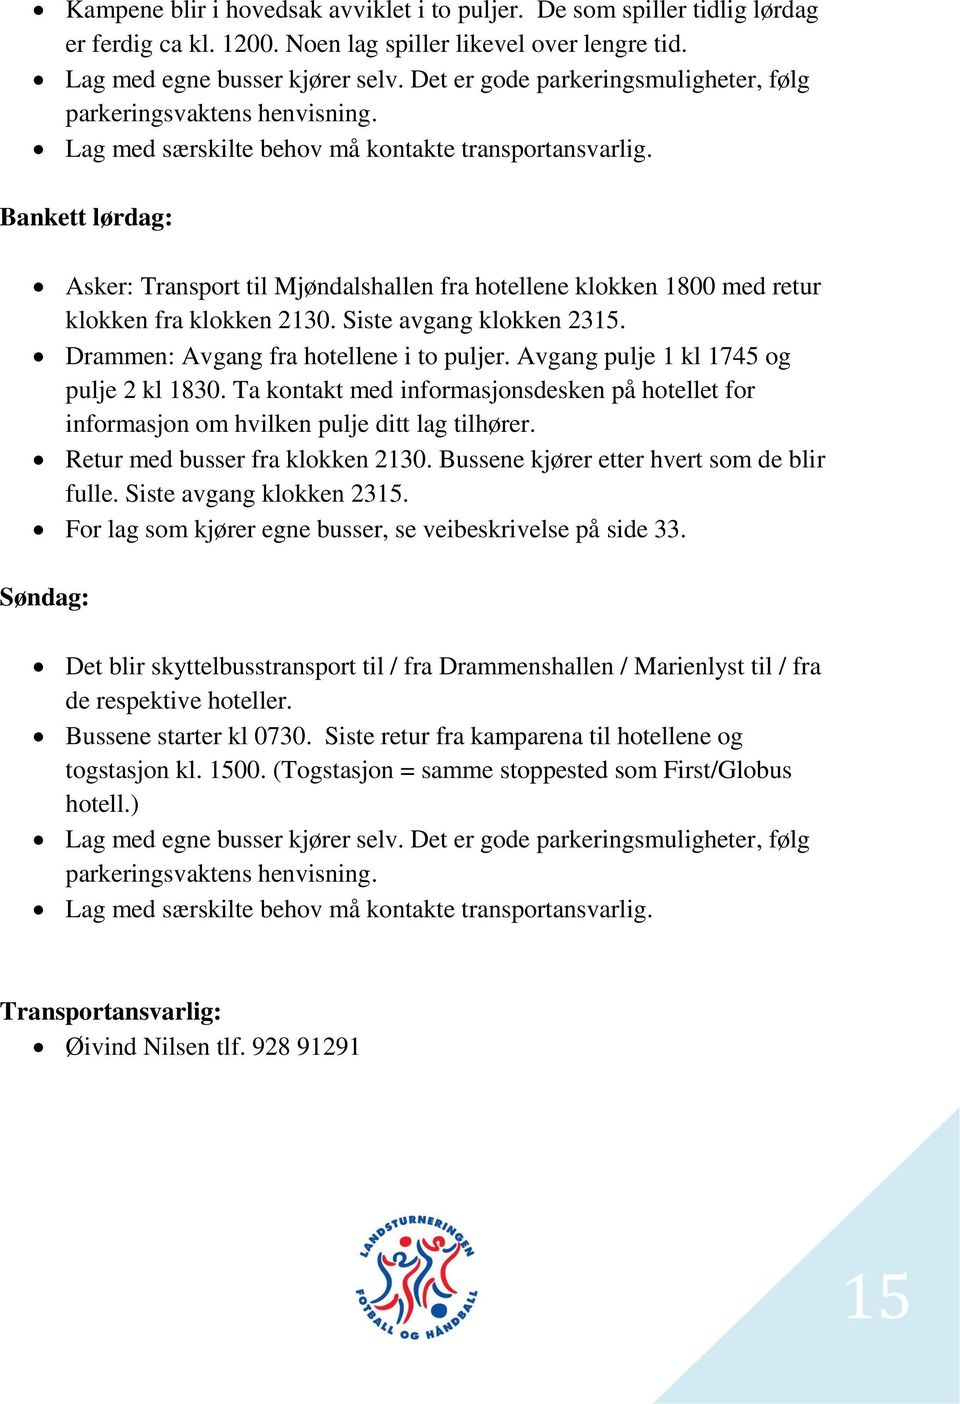 Bankett lørdag: Asker: Transport til Mjøndalshallen fra hotellene klokken 1800 med retur klokken fra klokken 2130. Siste avgang klokken 2315. Drammen: Avgang fra hotellene i to puljer.